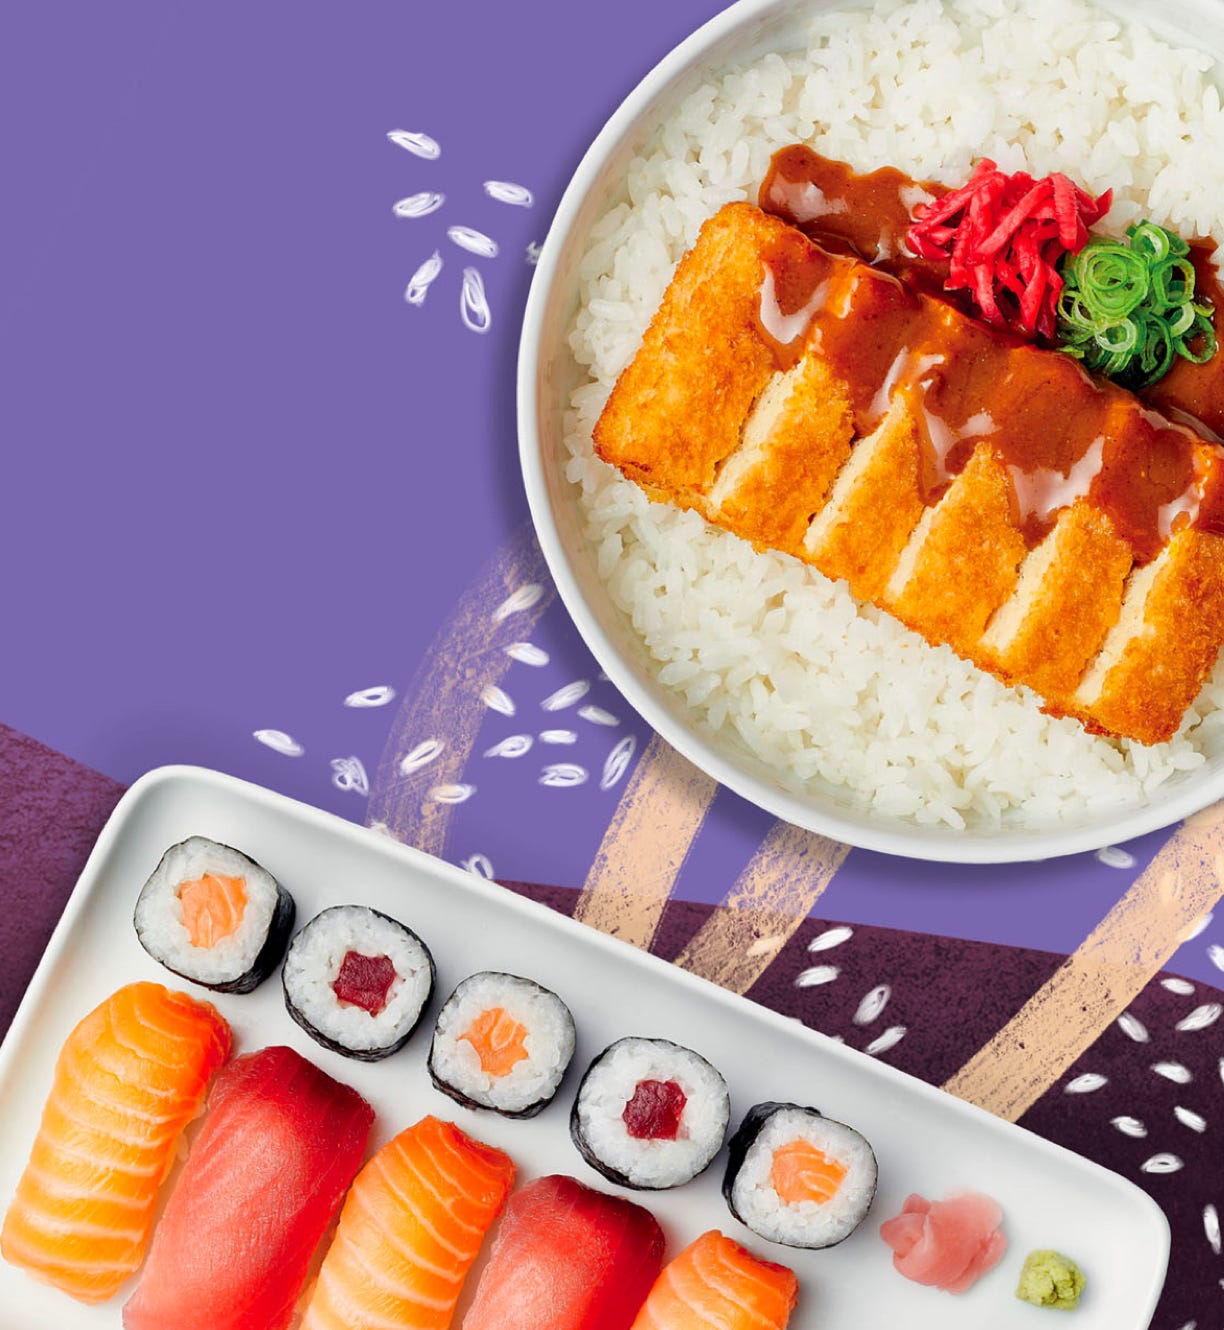 YO! sushi and katsu dishes